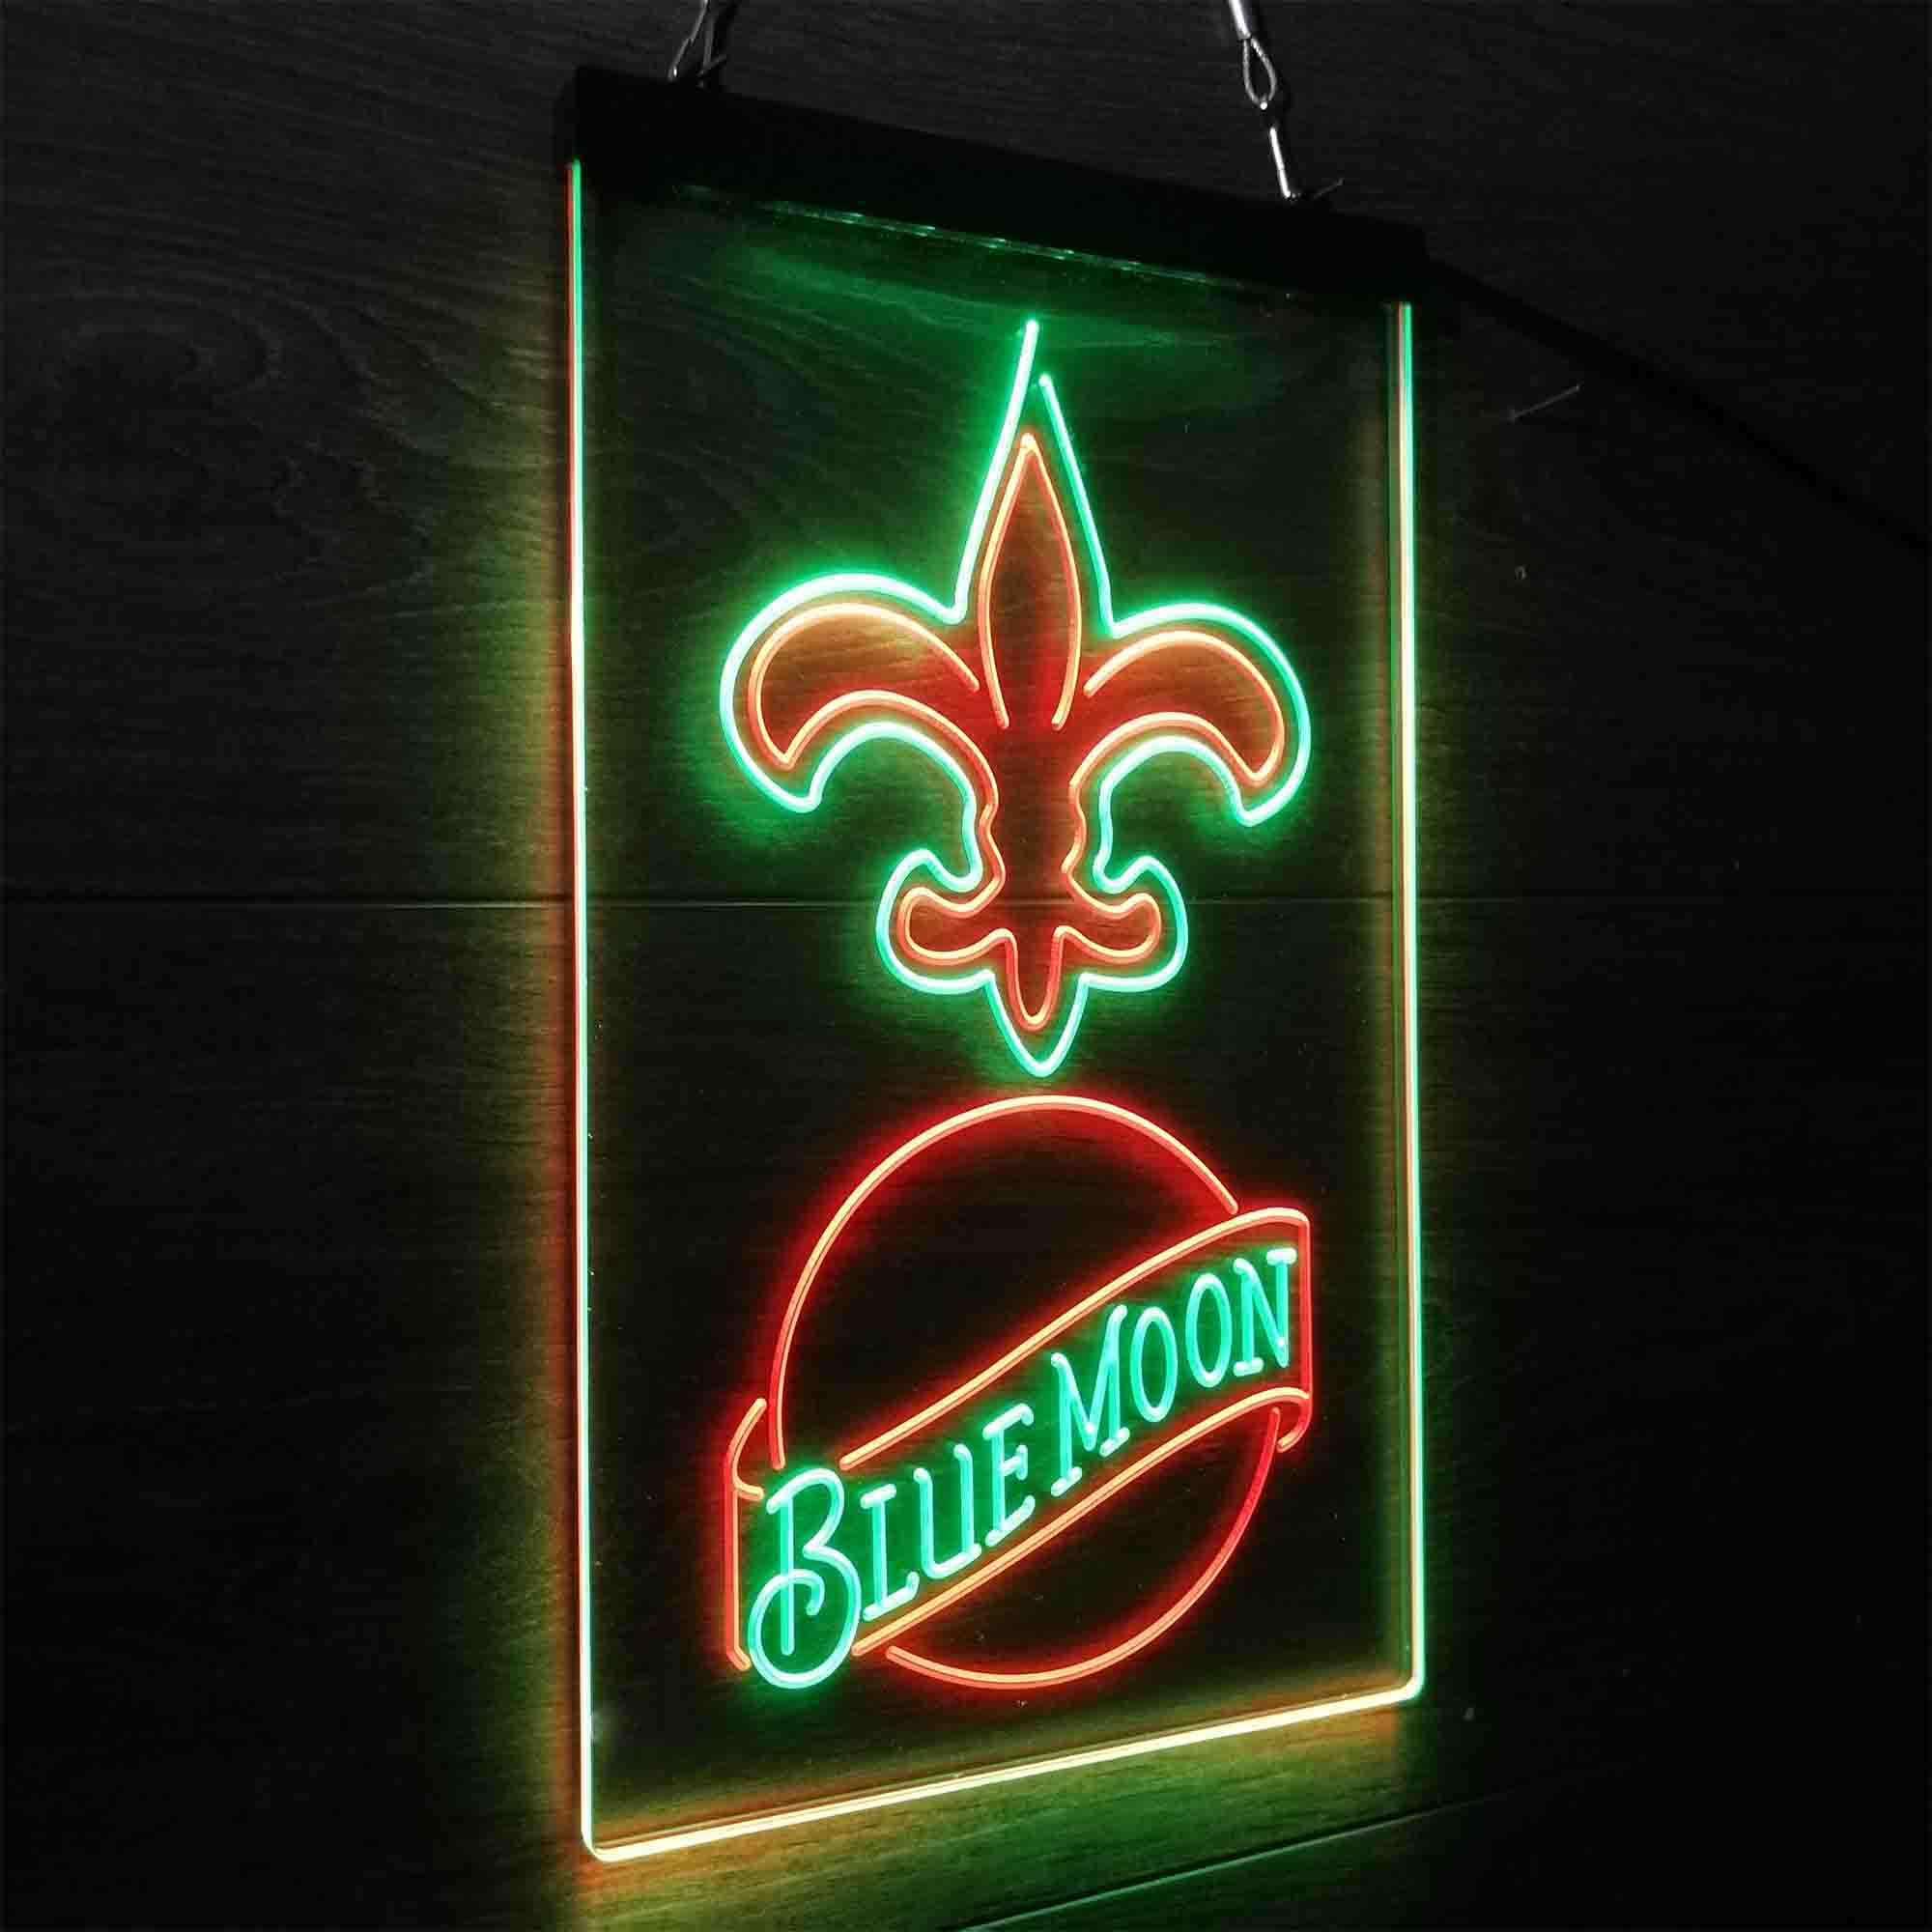 Blue Moon Bar New Orleans Saints Est. 1967 LED Neon Sign